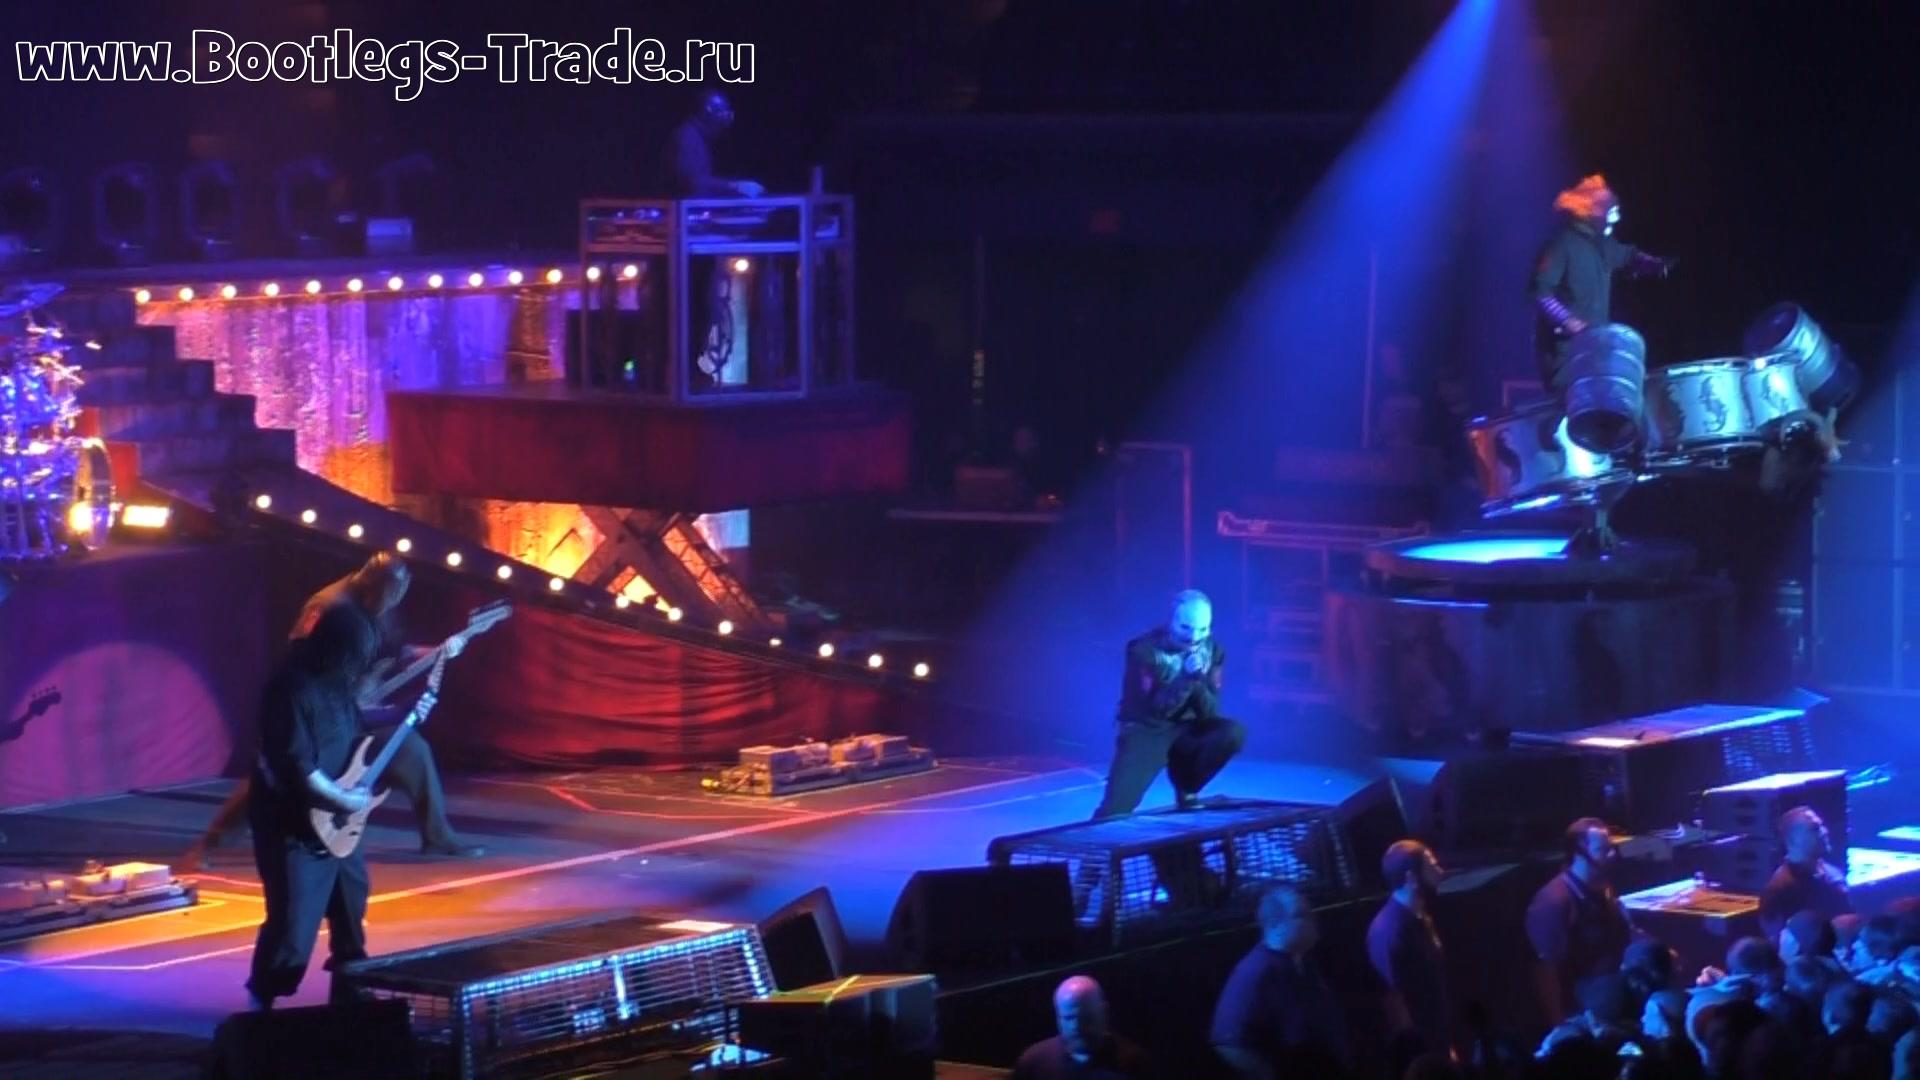 Slipknot 2014-12-07 Tsongas Center, Lowell, MA, USA (Antihero HD 1080)